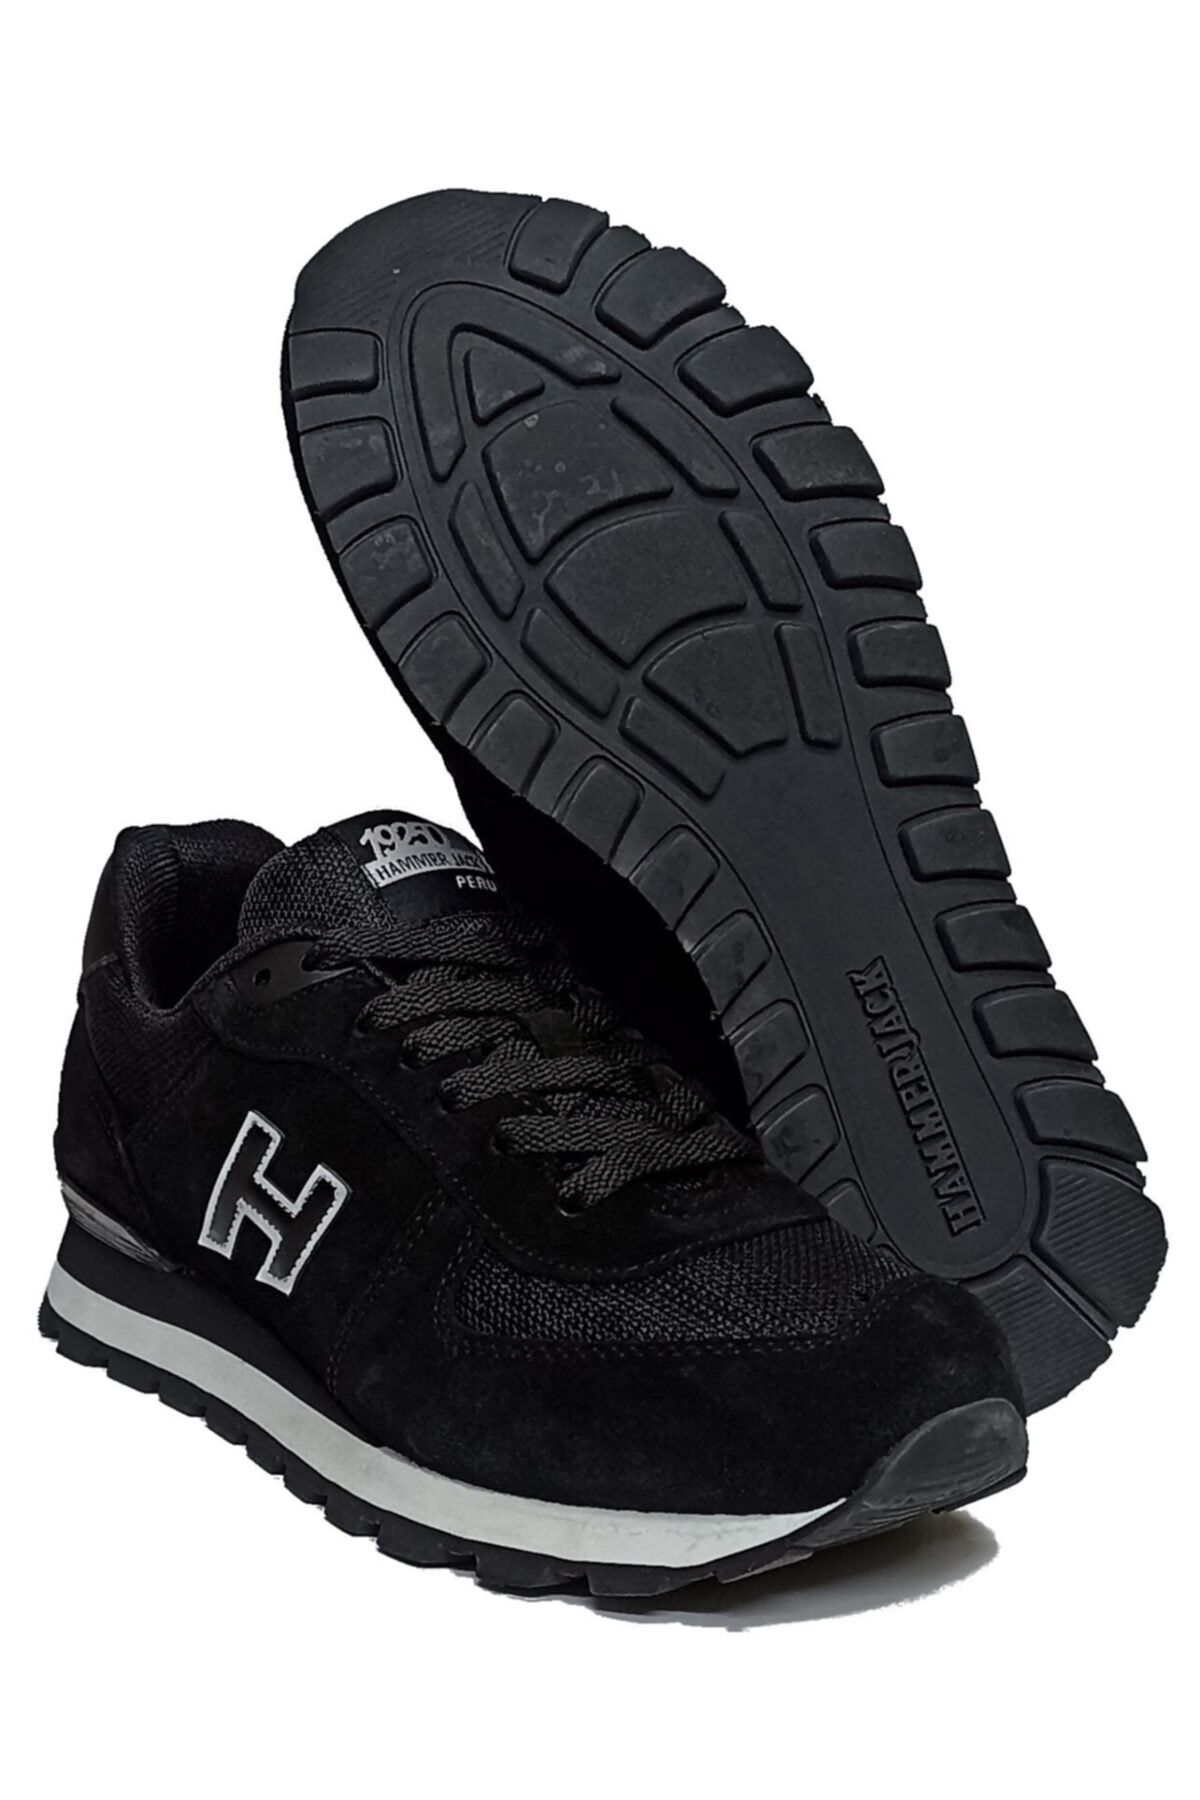 کفش کتانی ورزشی اسپرت  هامر جک Hammer Jack (برند ترکیه)